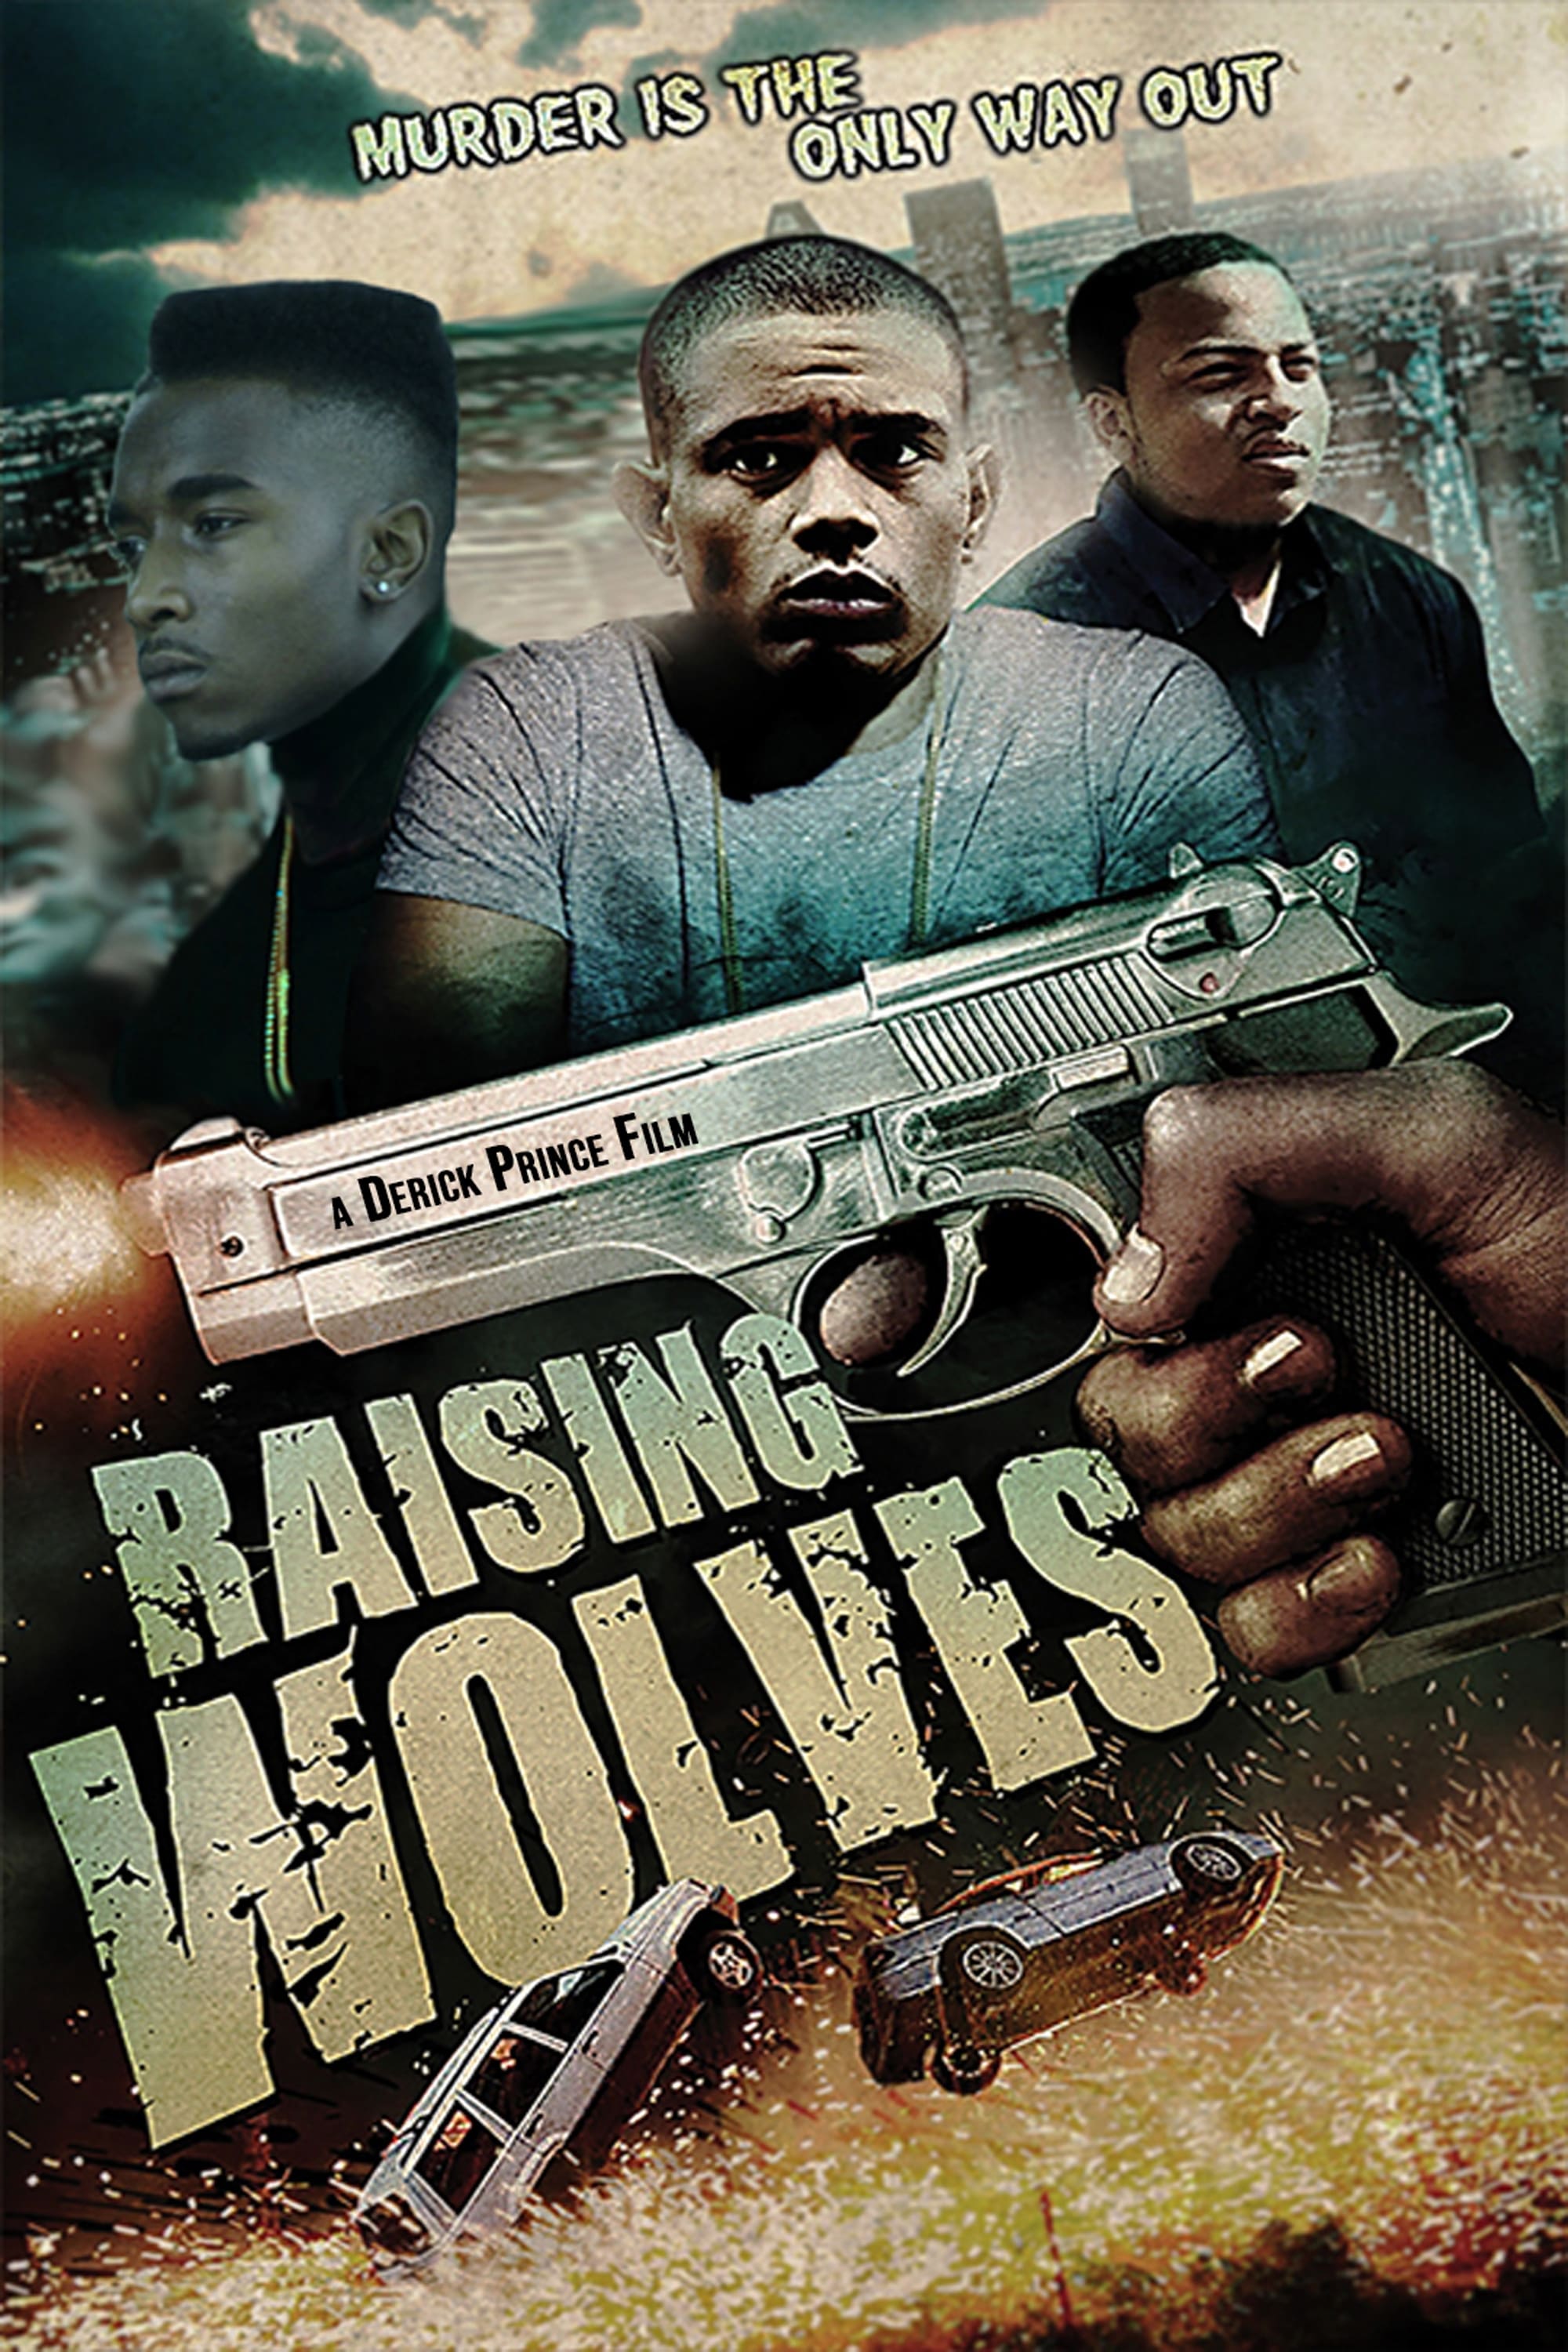 Raising Wolves